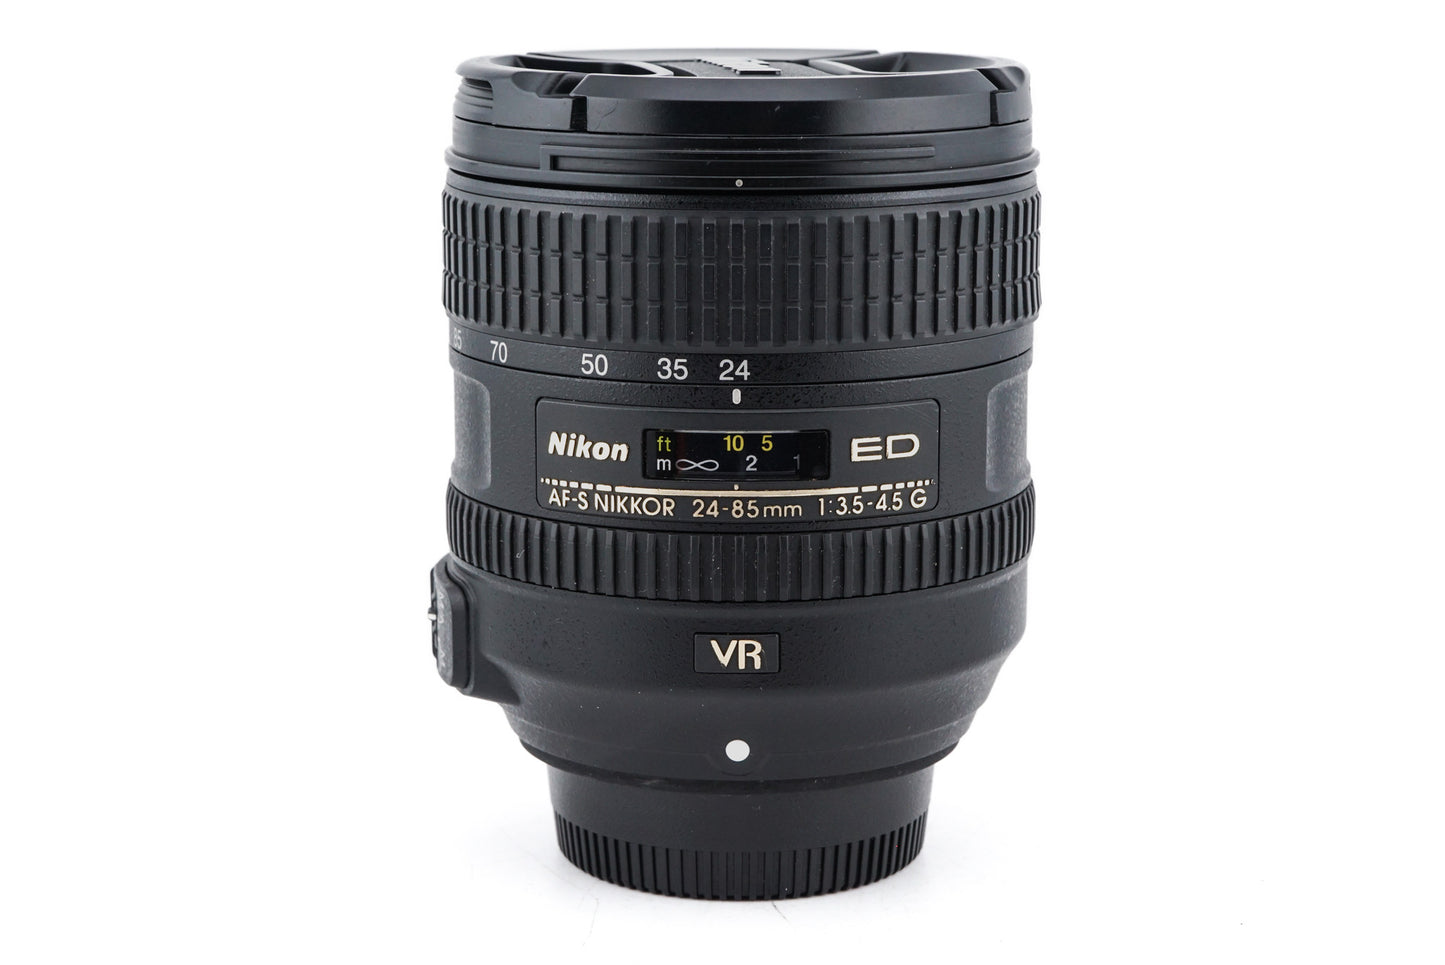 Nikon 24-85mm f3.5-4.5 G ED VR AF-S Nikkor - Lens